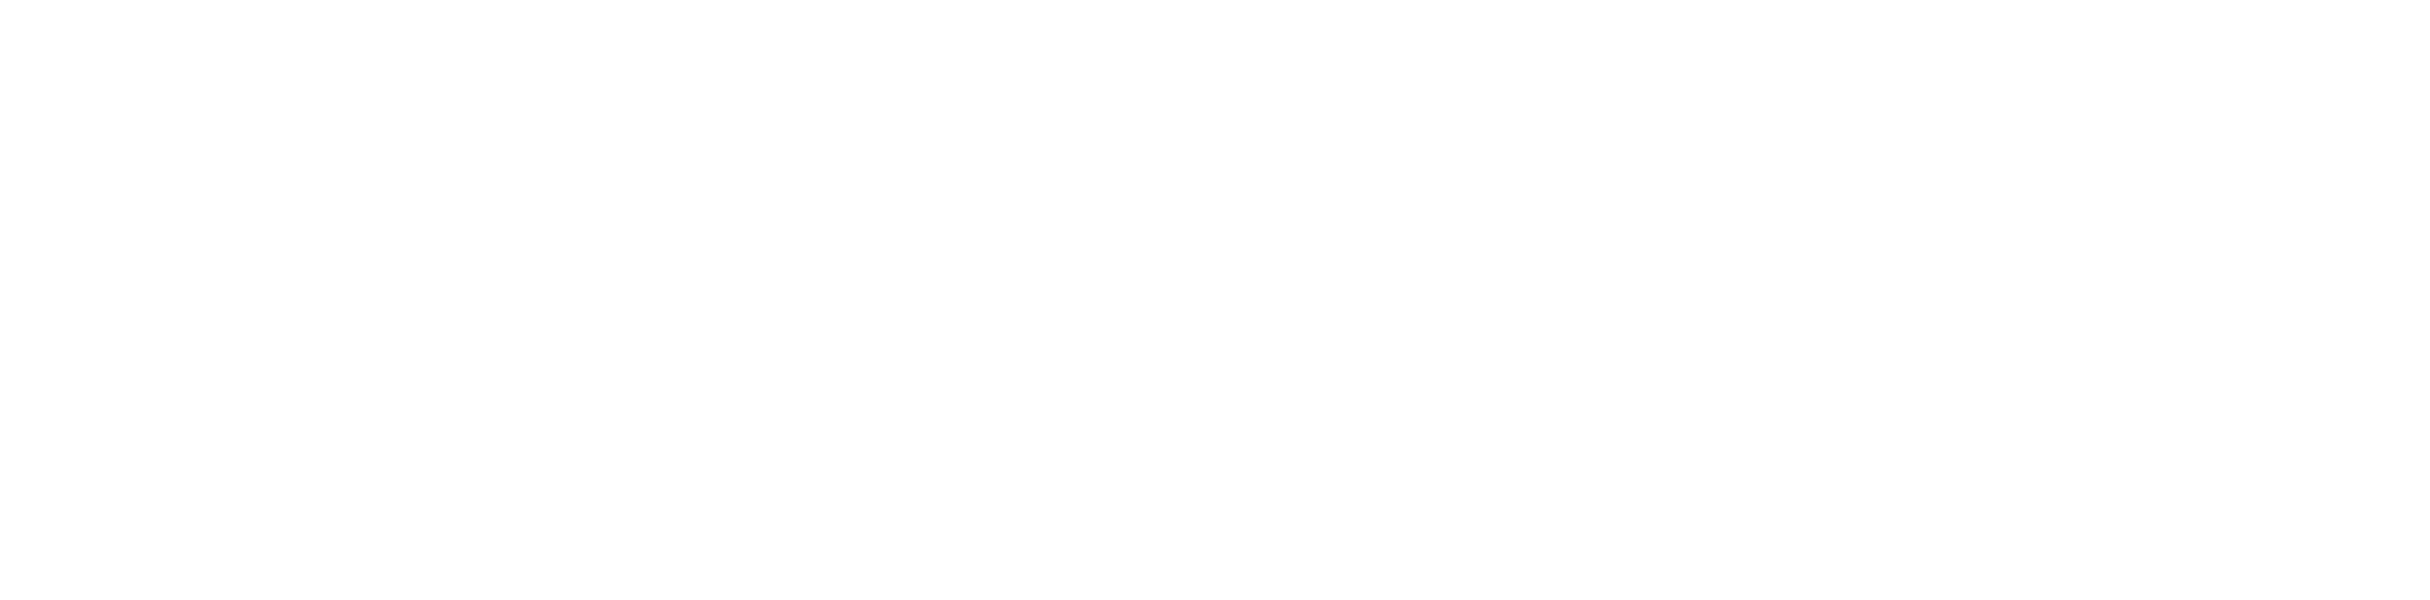 Radissonhotels SSO